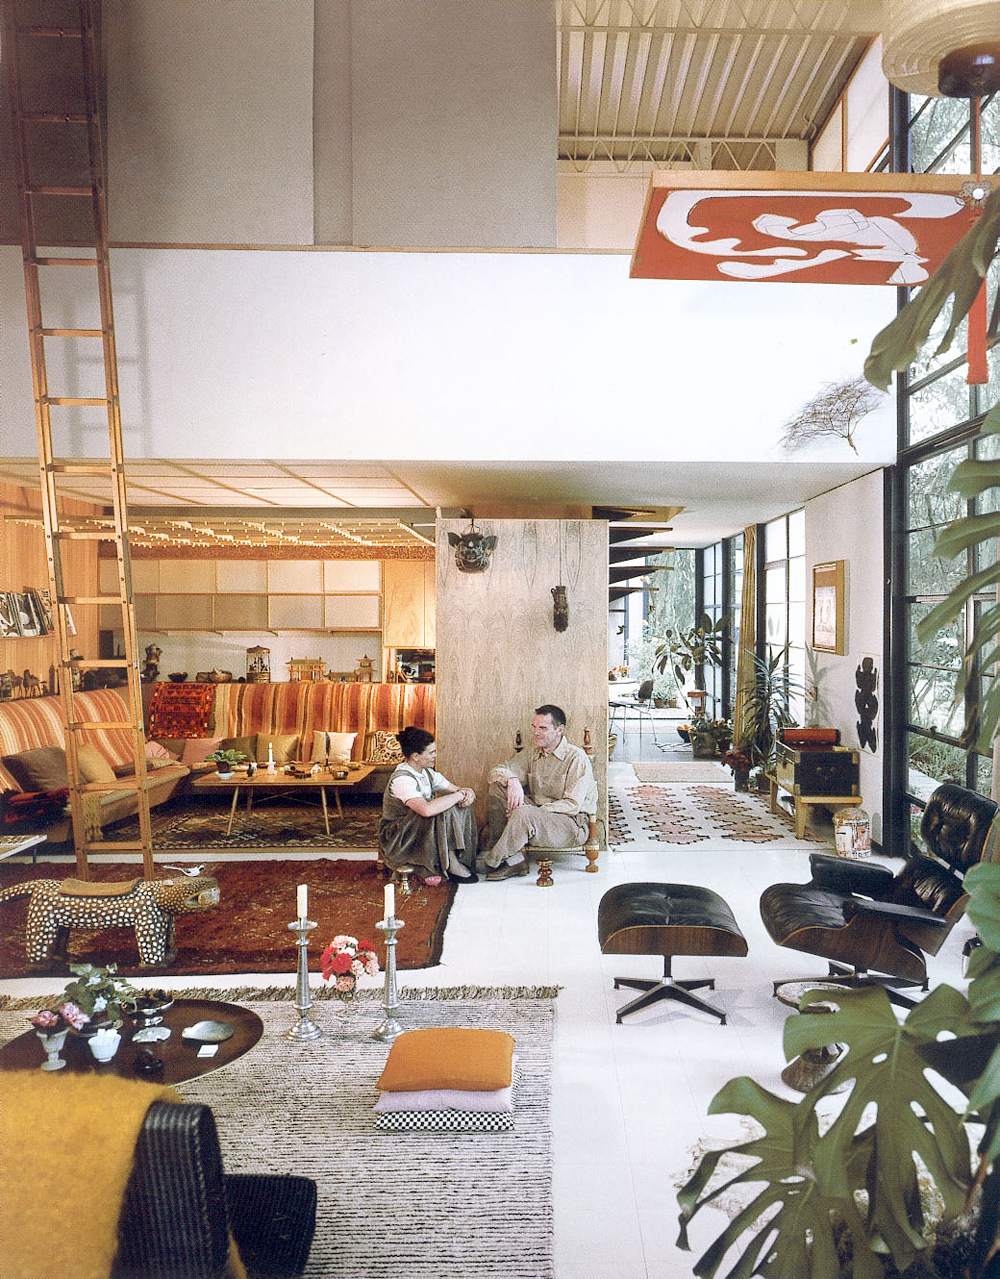 Charles et Ray maison Eames interieur design 50s modernisme